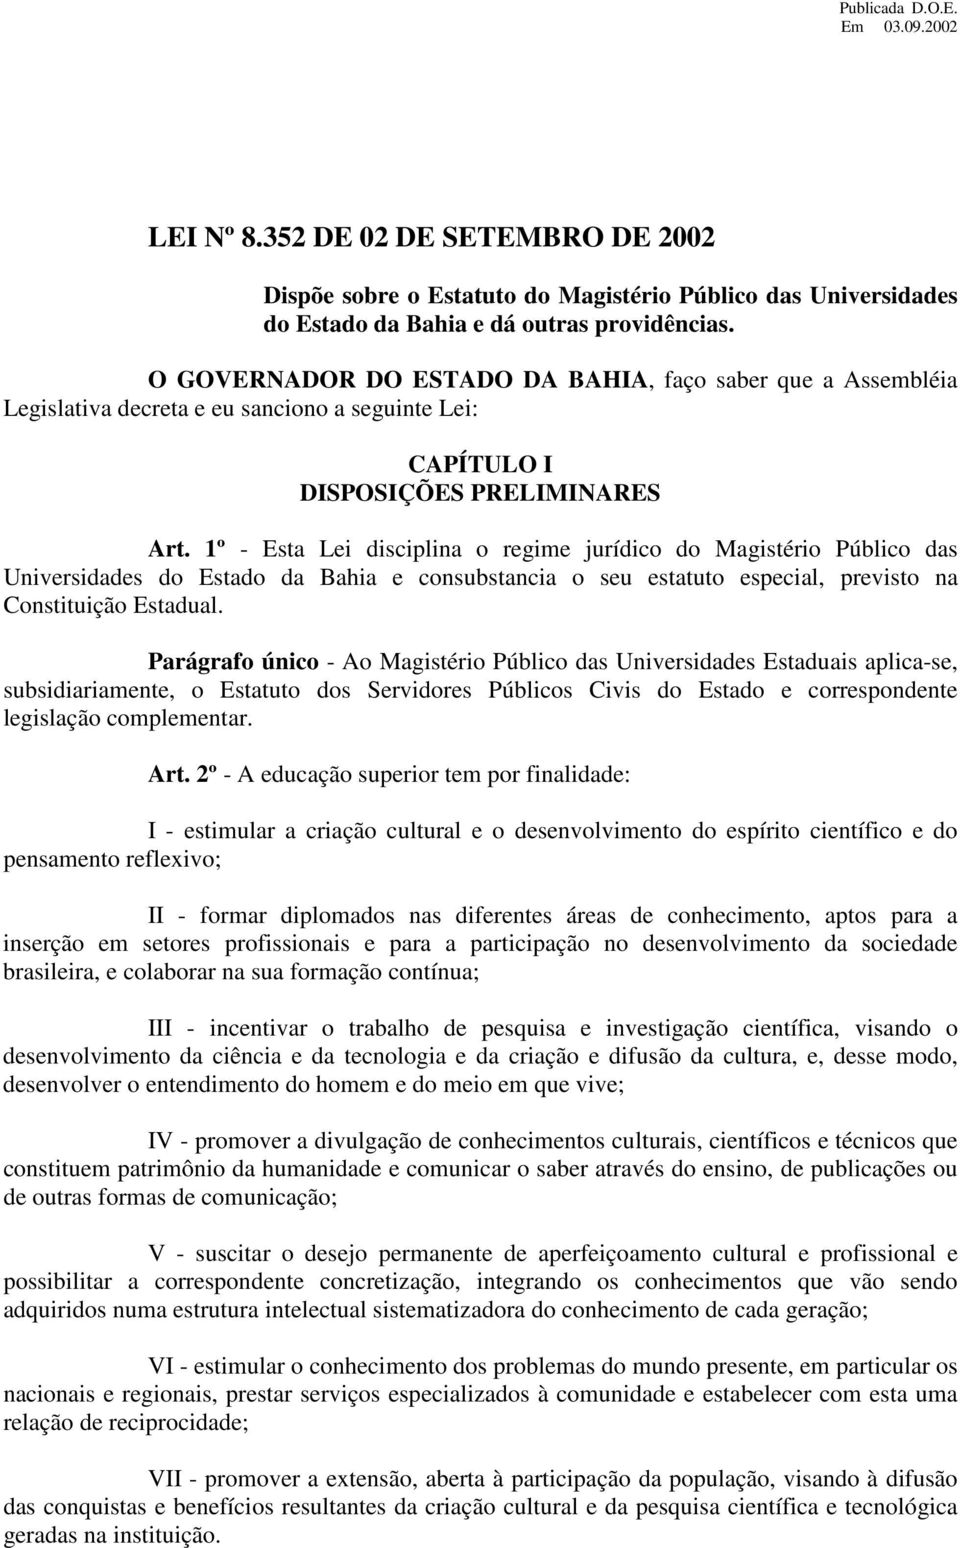 1º - Esta Lei disciplina o regime jurídico do Magistério Público das Universidades do Estado da Bahia e consubstancia o seu estatuto especial, previsto na Constituição Estadual.